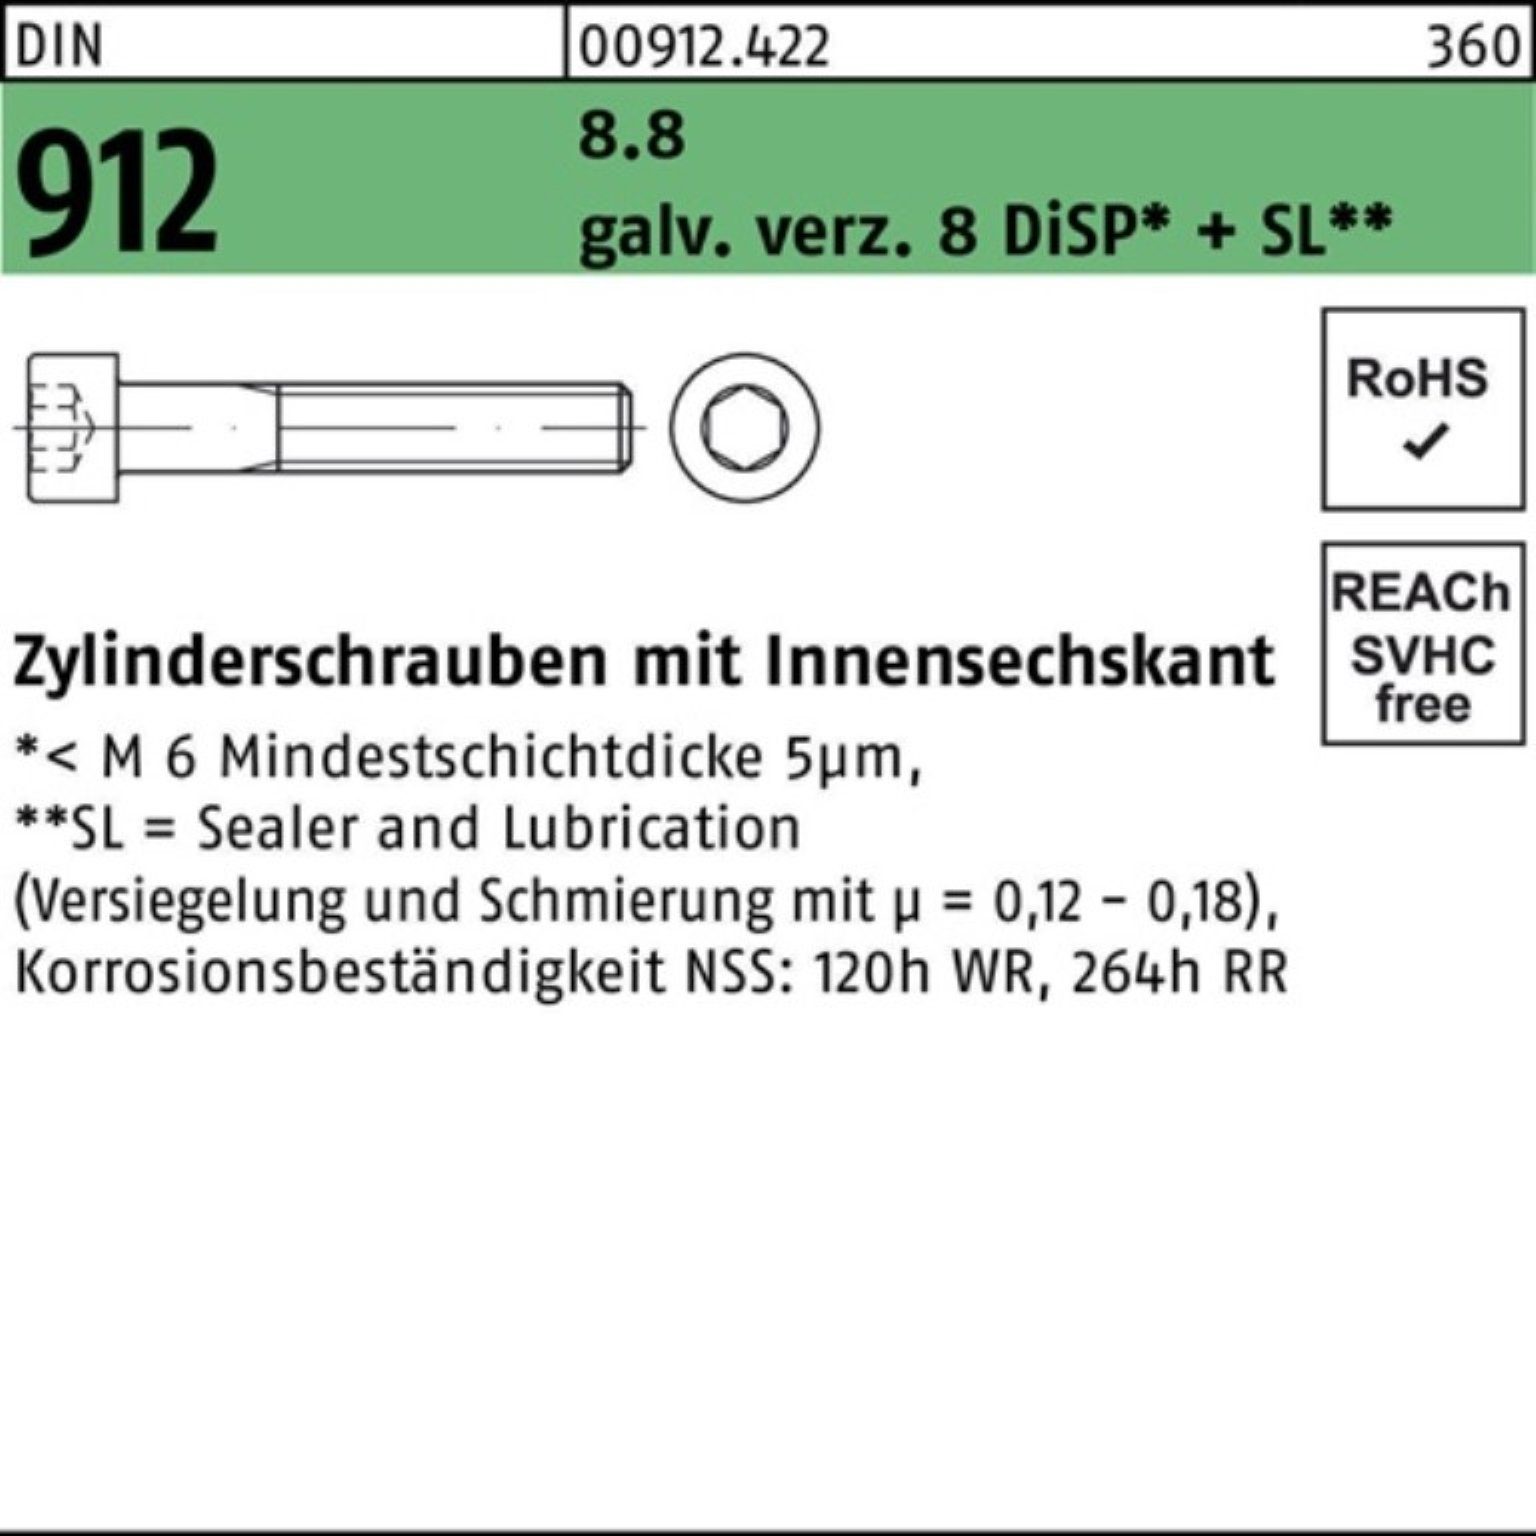 DIN Pack M4x + Reyher Zn Zylinderschraube 6 DiSP 500er Innen-6kt 912 8.8 gal Zylinderschraube